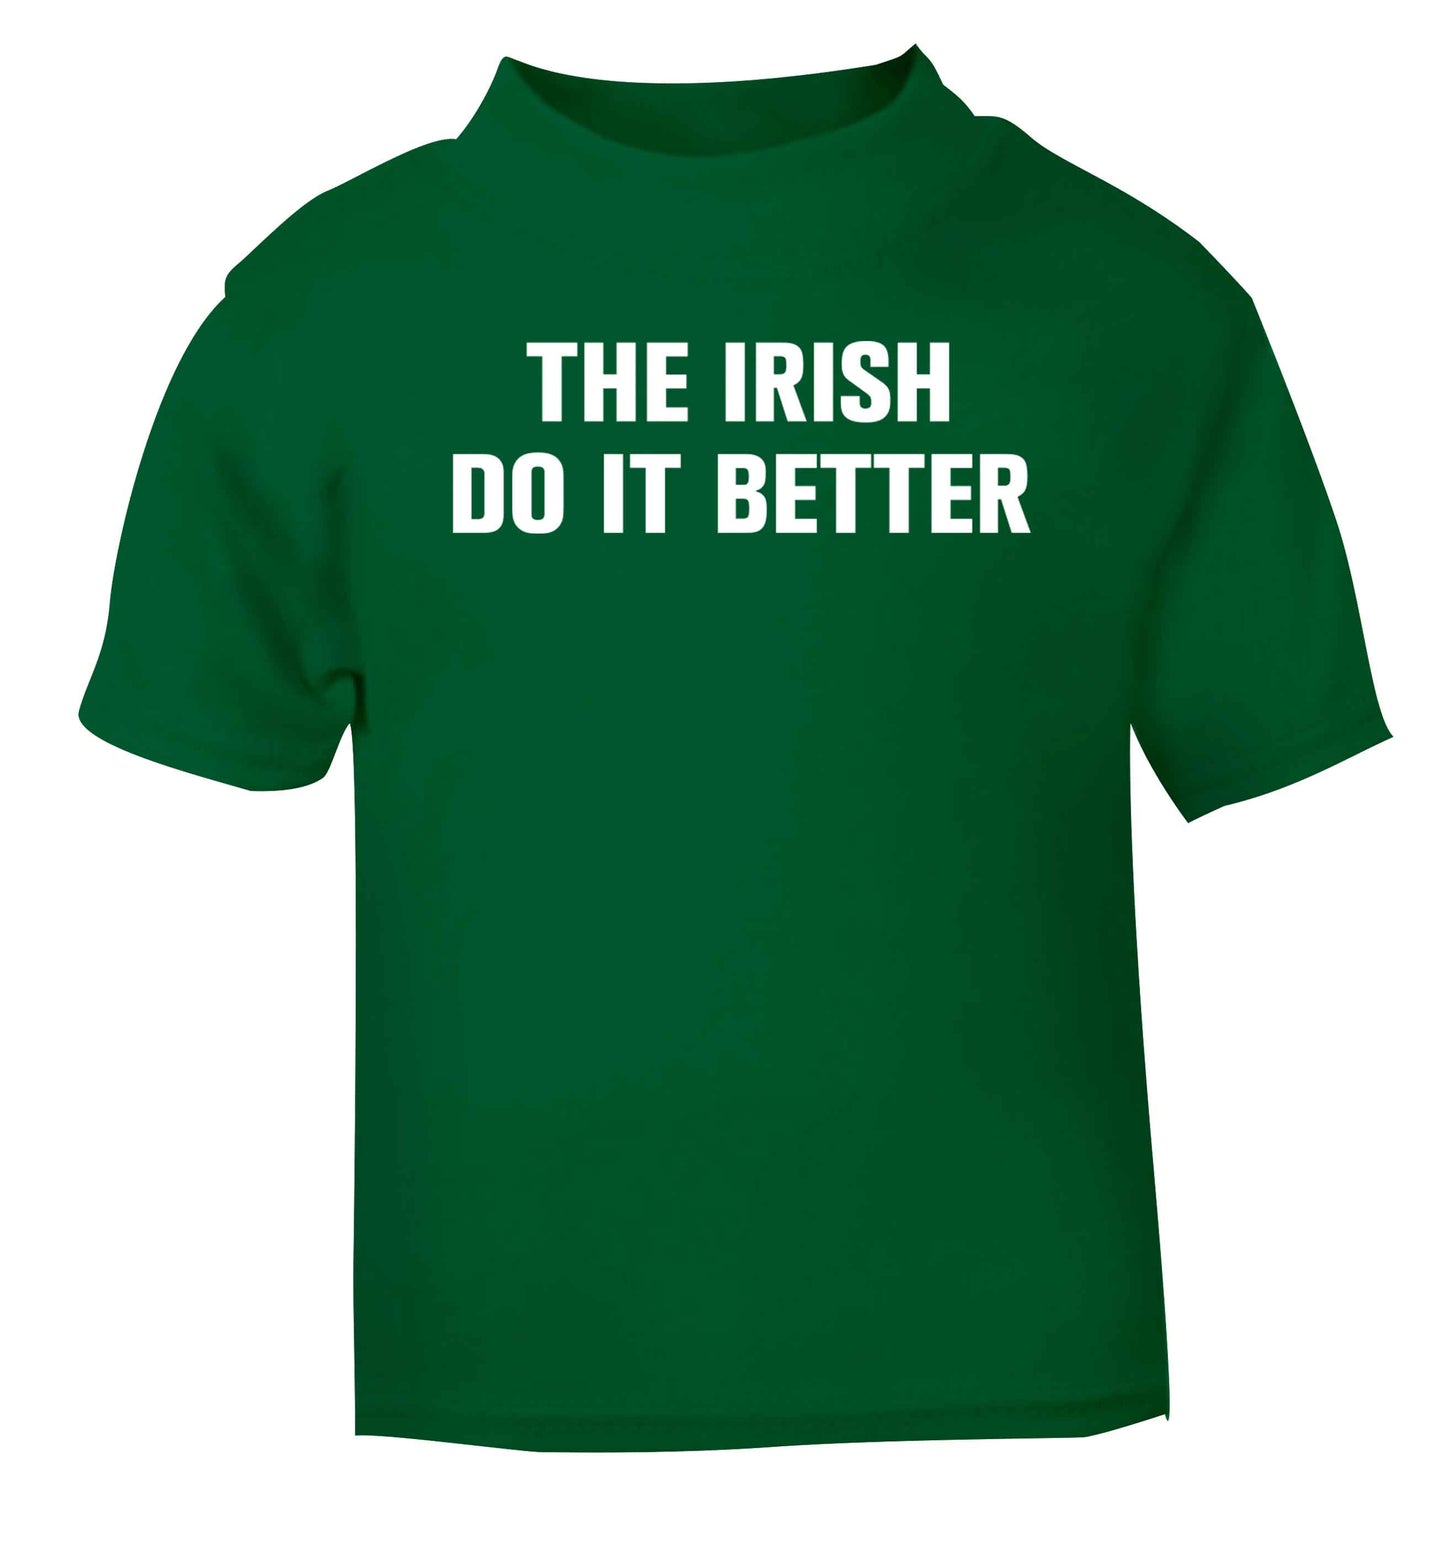 The Irish do it better green baby toddler Tshirt 2 Years